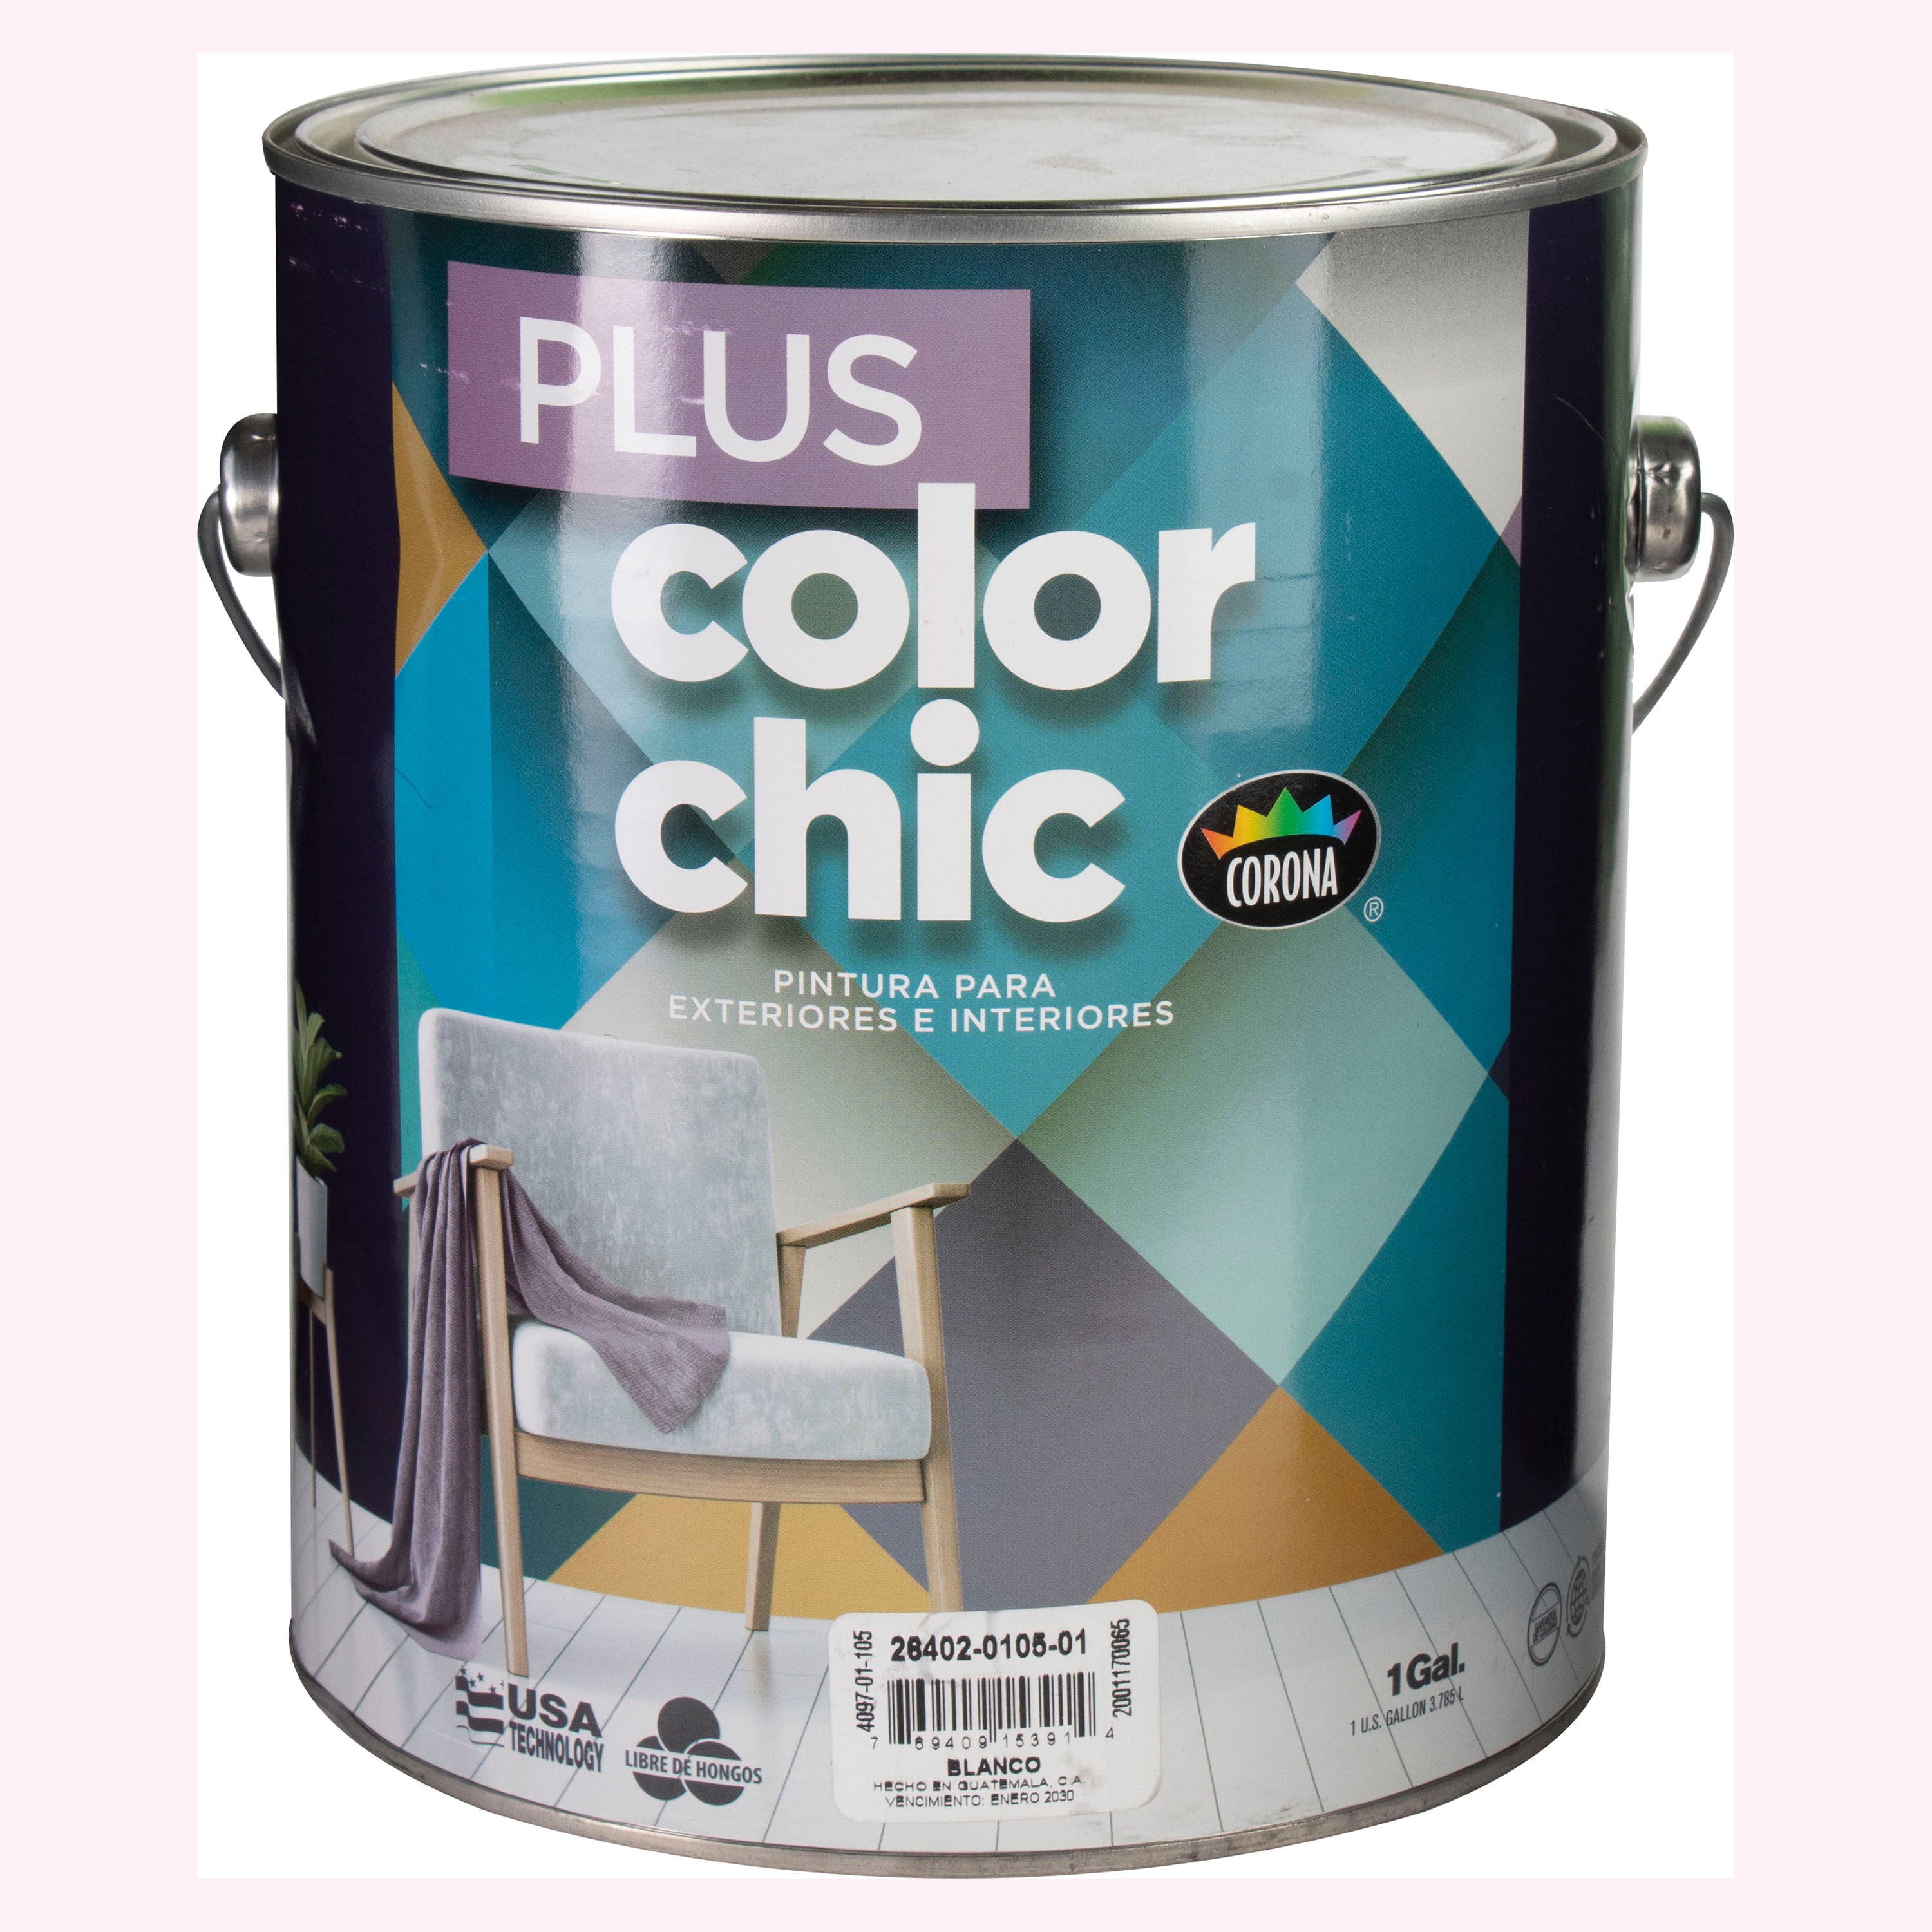 Engreído Y equipo Lubricar Comprar Pintura Marca Color Chic Plus Latex Blanco Galón | Walmart Costa  Rica